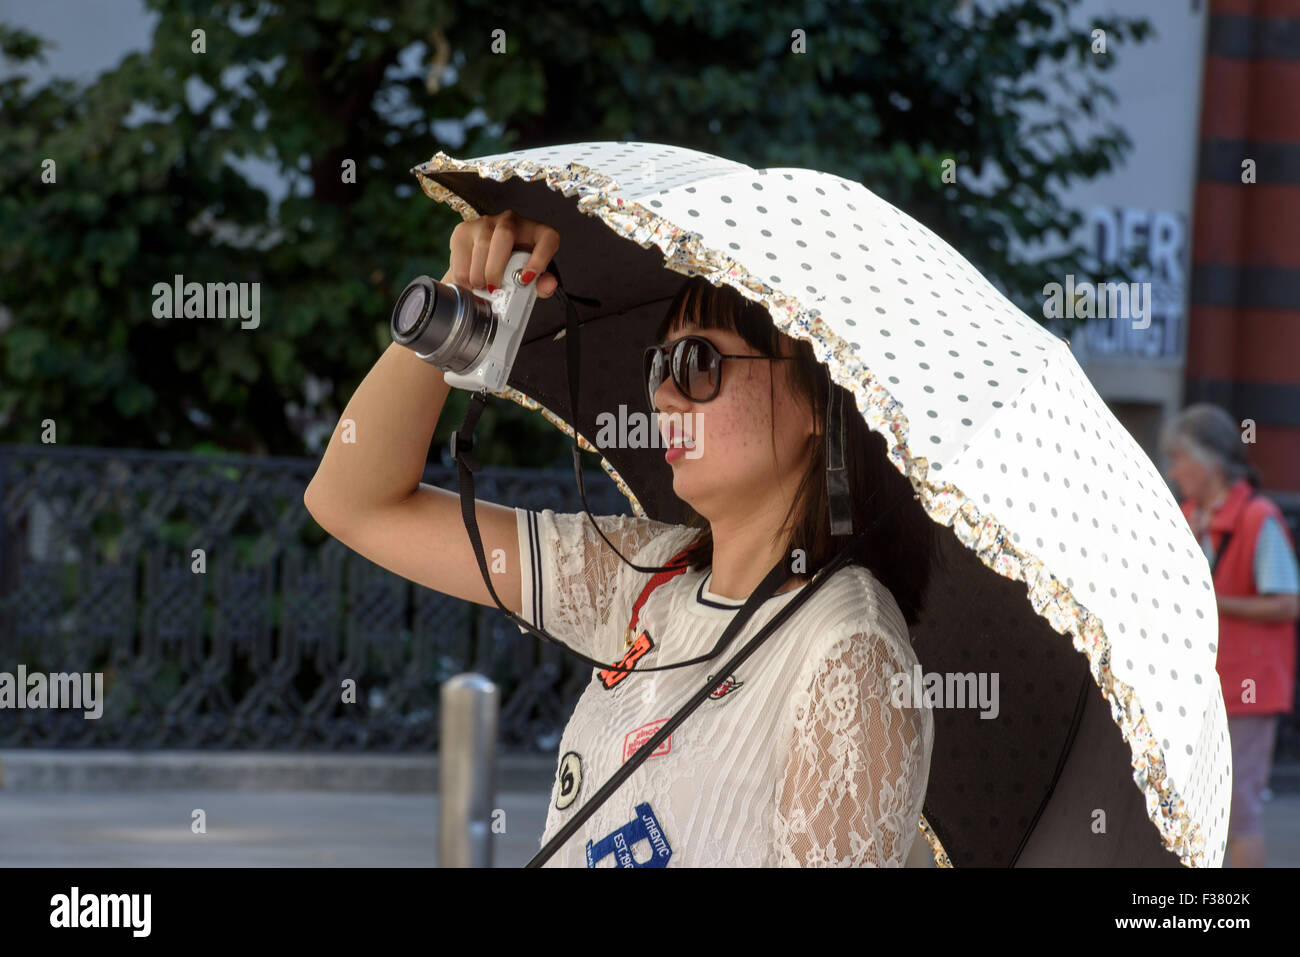 Tourist with parasol taking pictures, Vienna, Austria Stock Photo